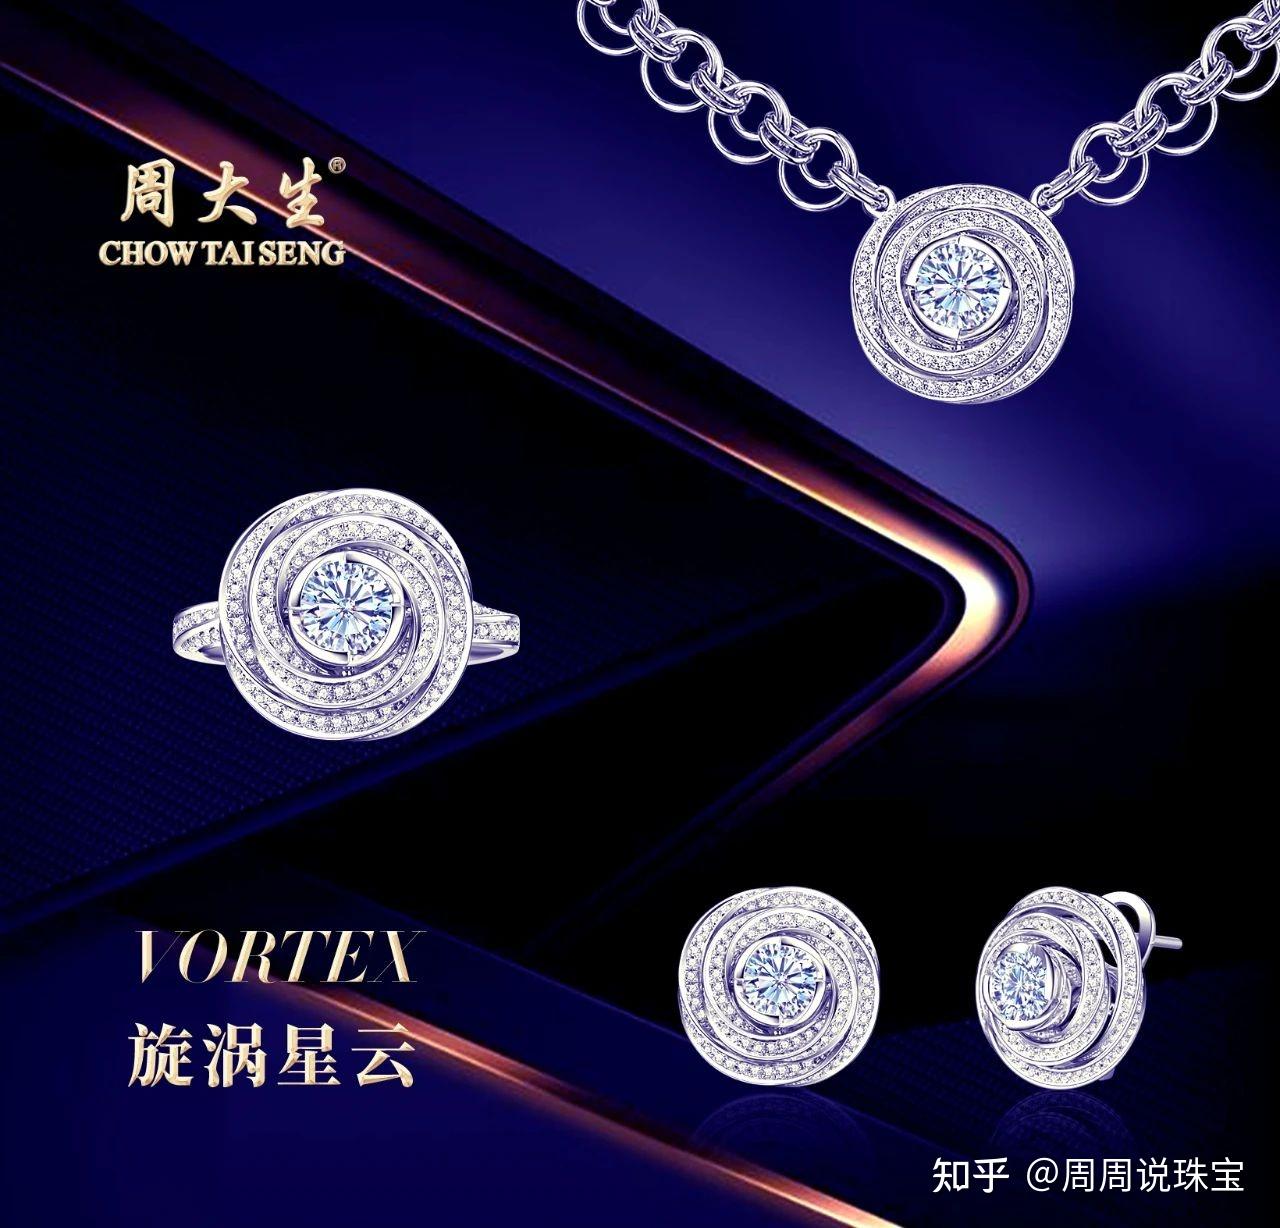 极光大师系列是周大生情景风格珠宝旗下的高端产品线,在钻石原材料的